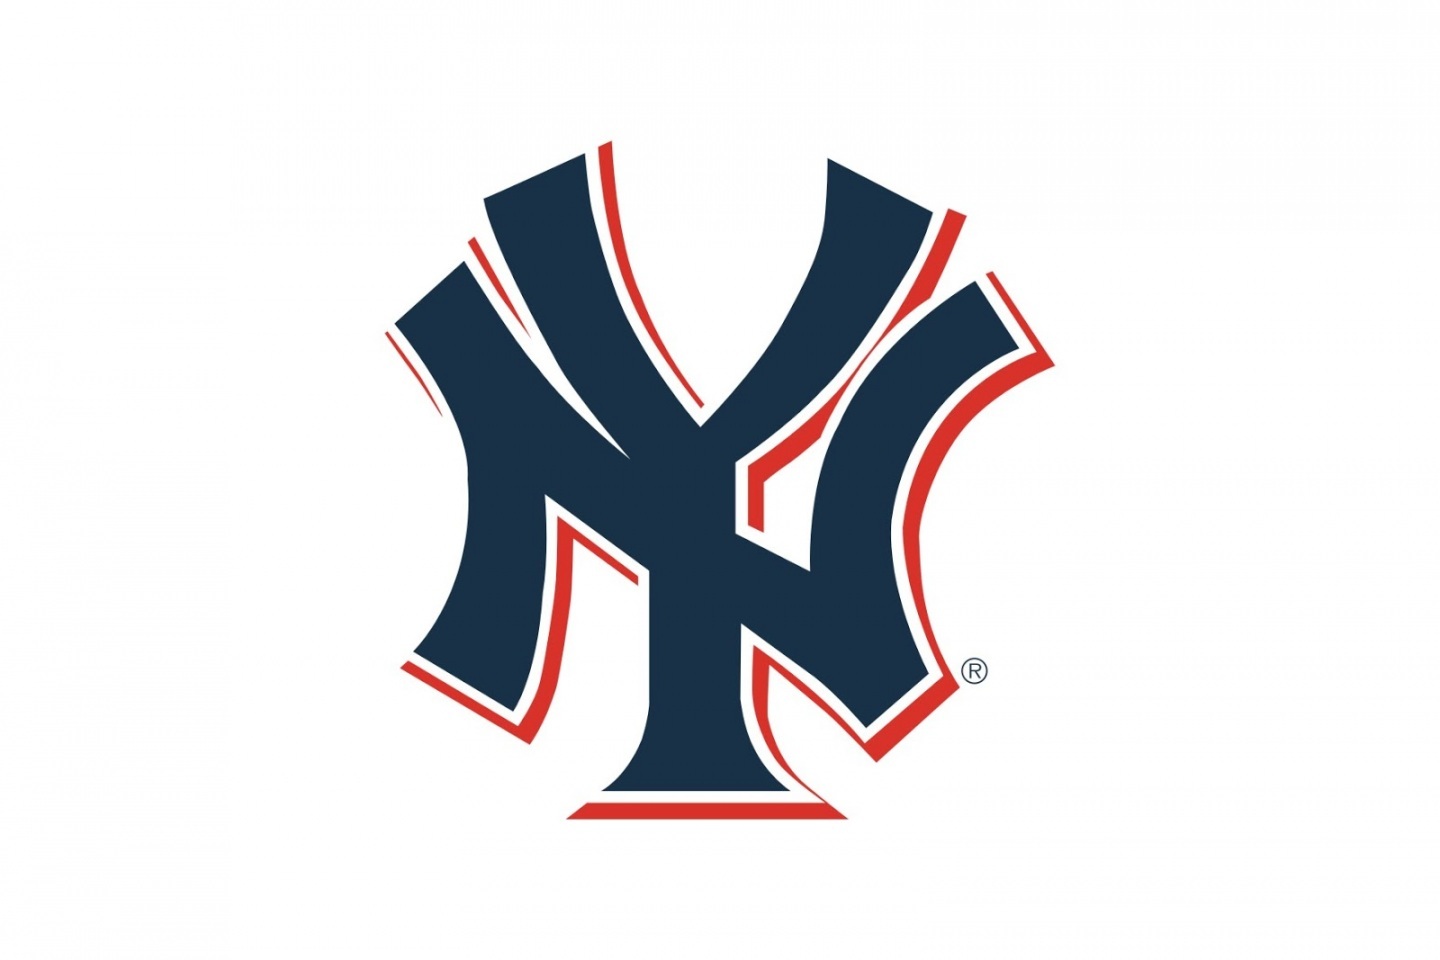 Yankees Logo Vector Free / New York Yankees Vector at Vectorified.com ...